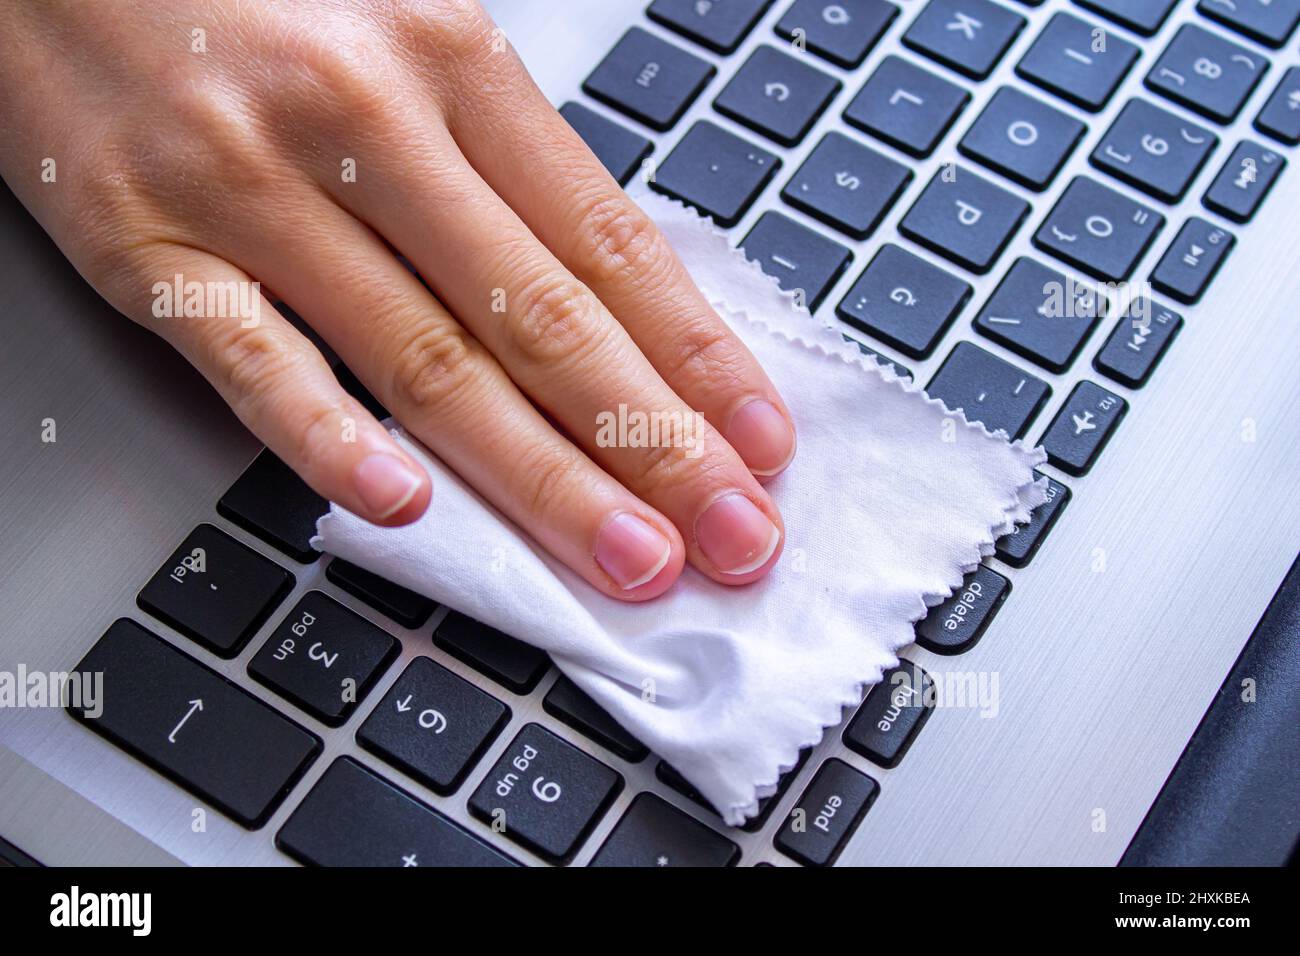 Frau, die die Laptop-Tastatur mit einem weißen Tuch reinigt Stockfotografie  - Alamy